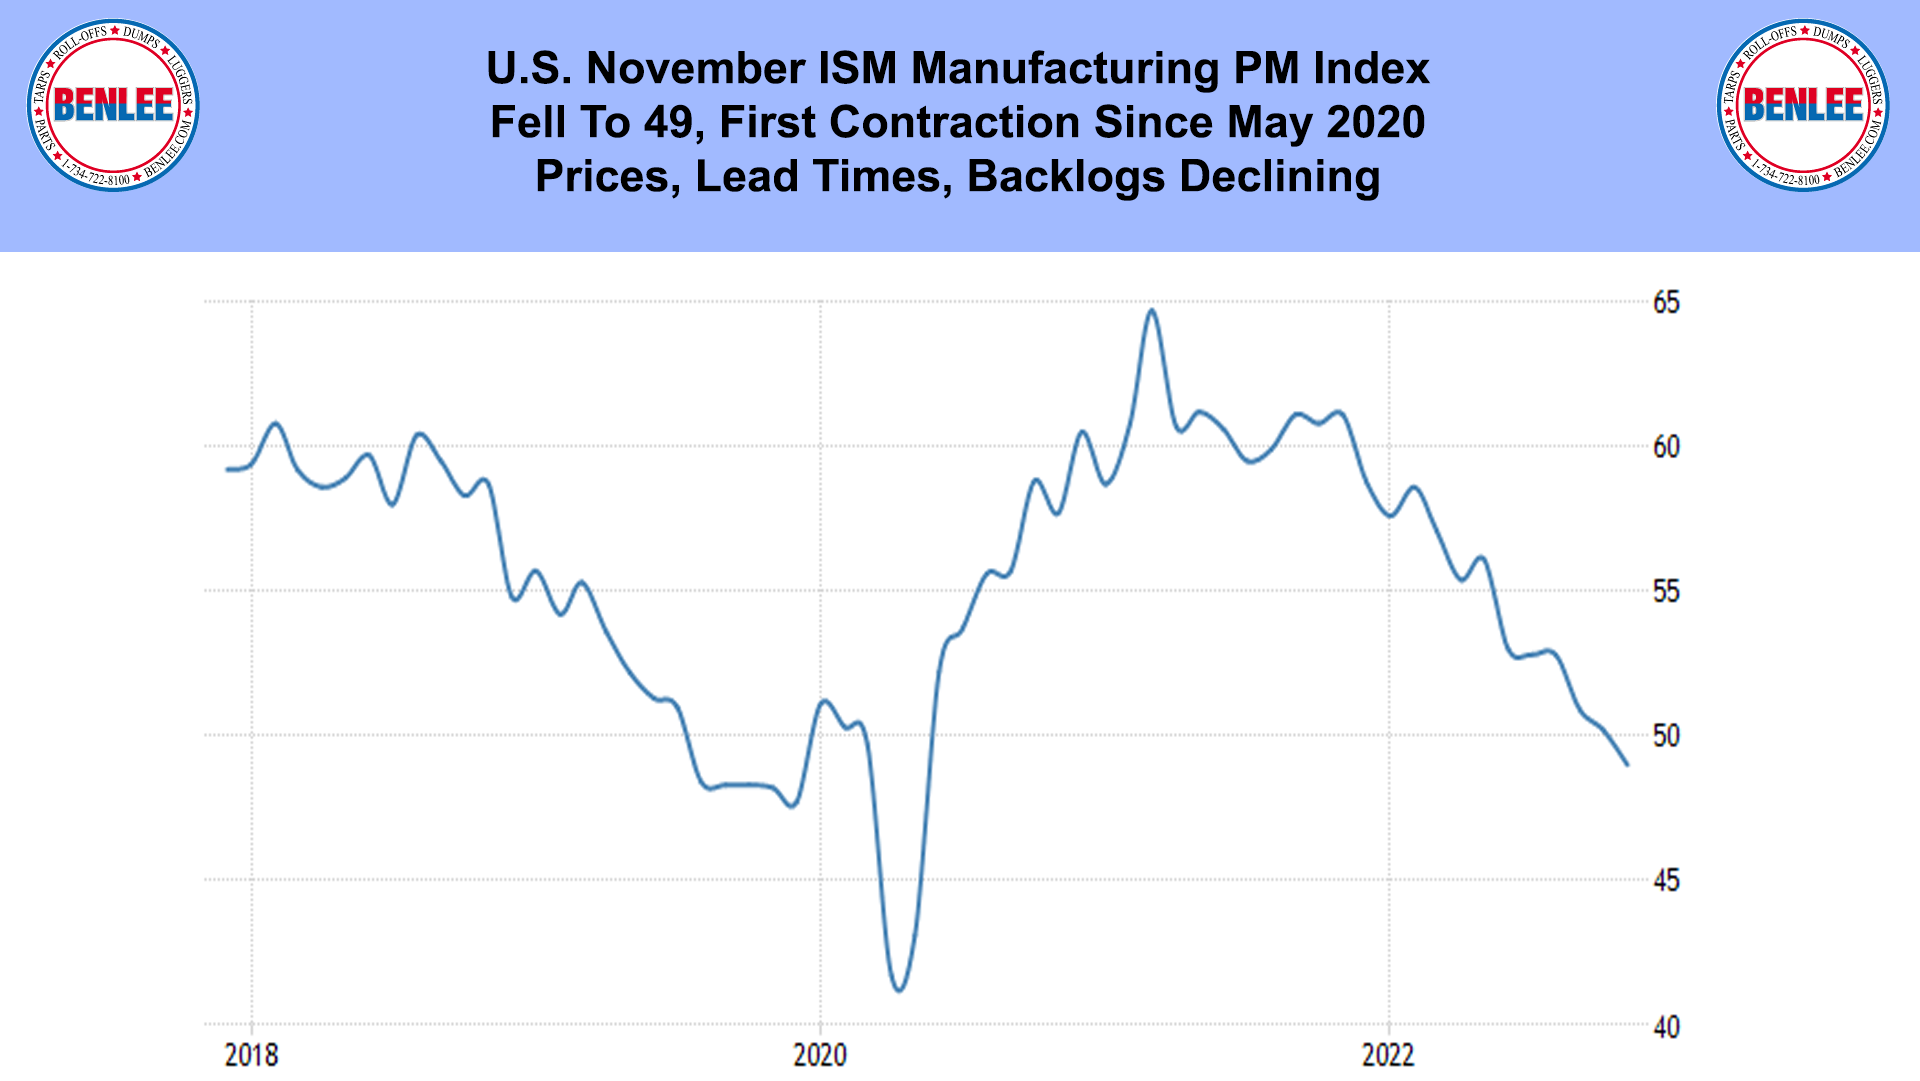 U.S. November ISM Manufacturing PM Index